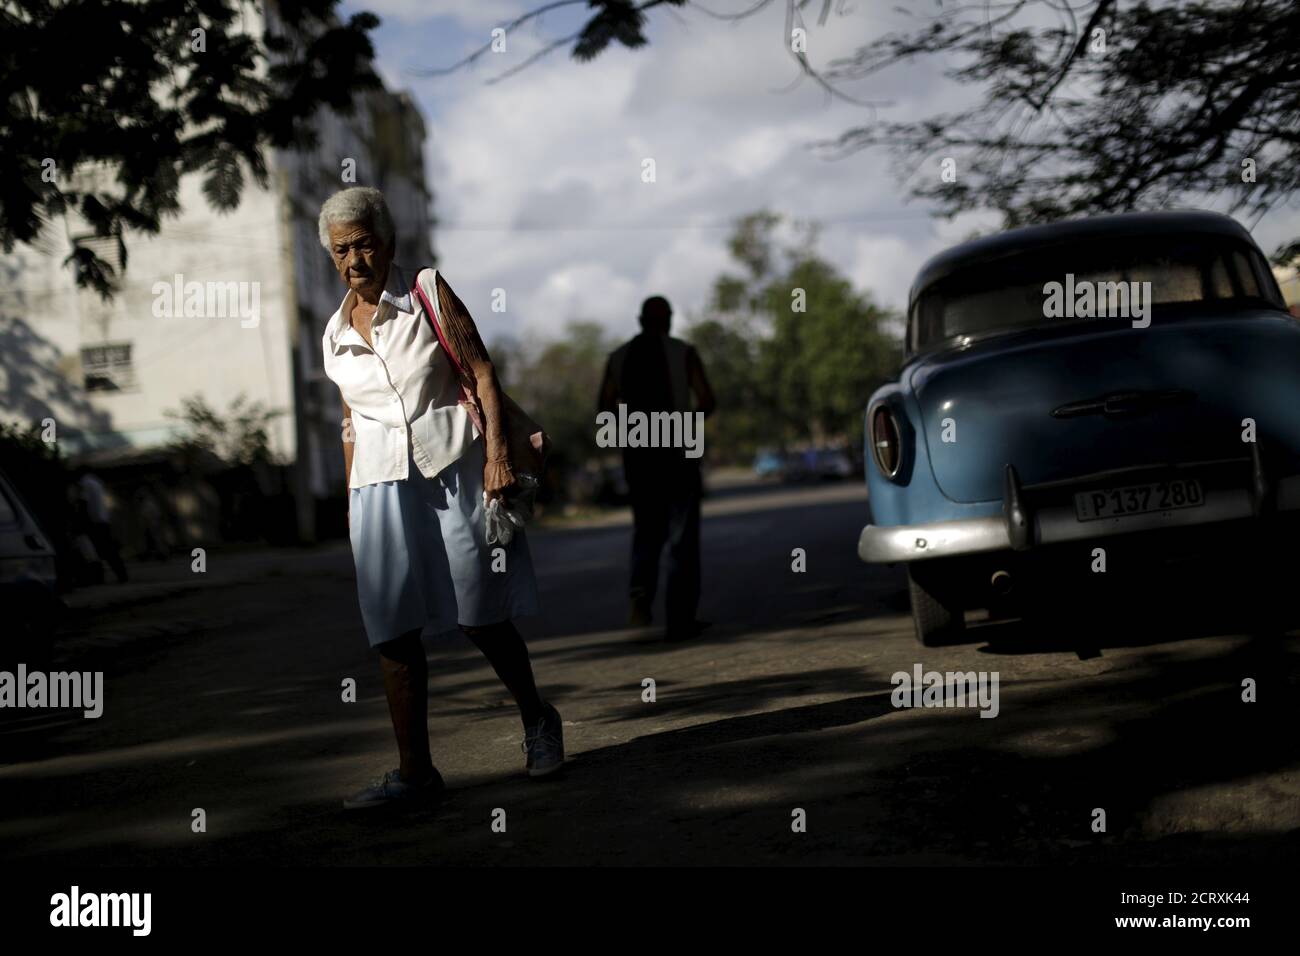 A woman walks on a street at the Alamar neighborhood in Havana, Cuba March 19, 2016. REUTERS/Ueslei Marcelino Stock Photo